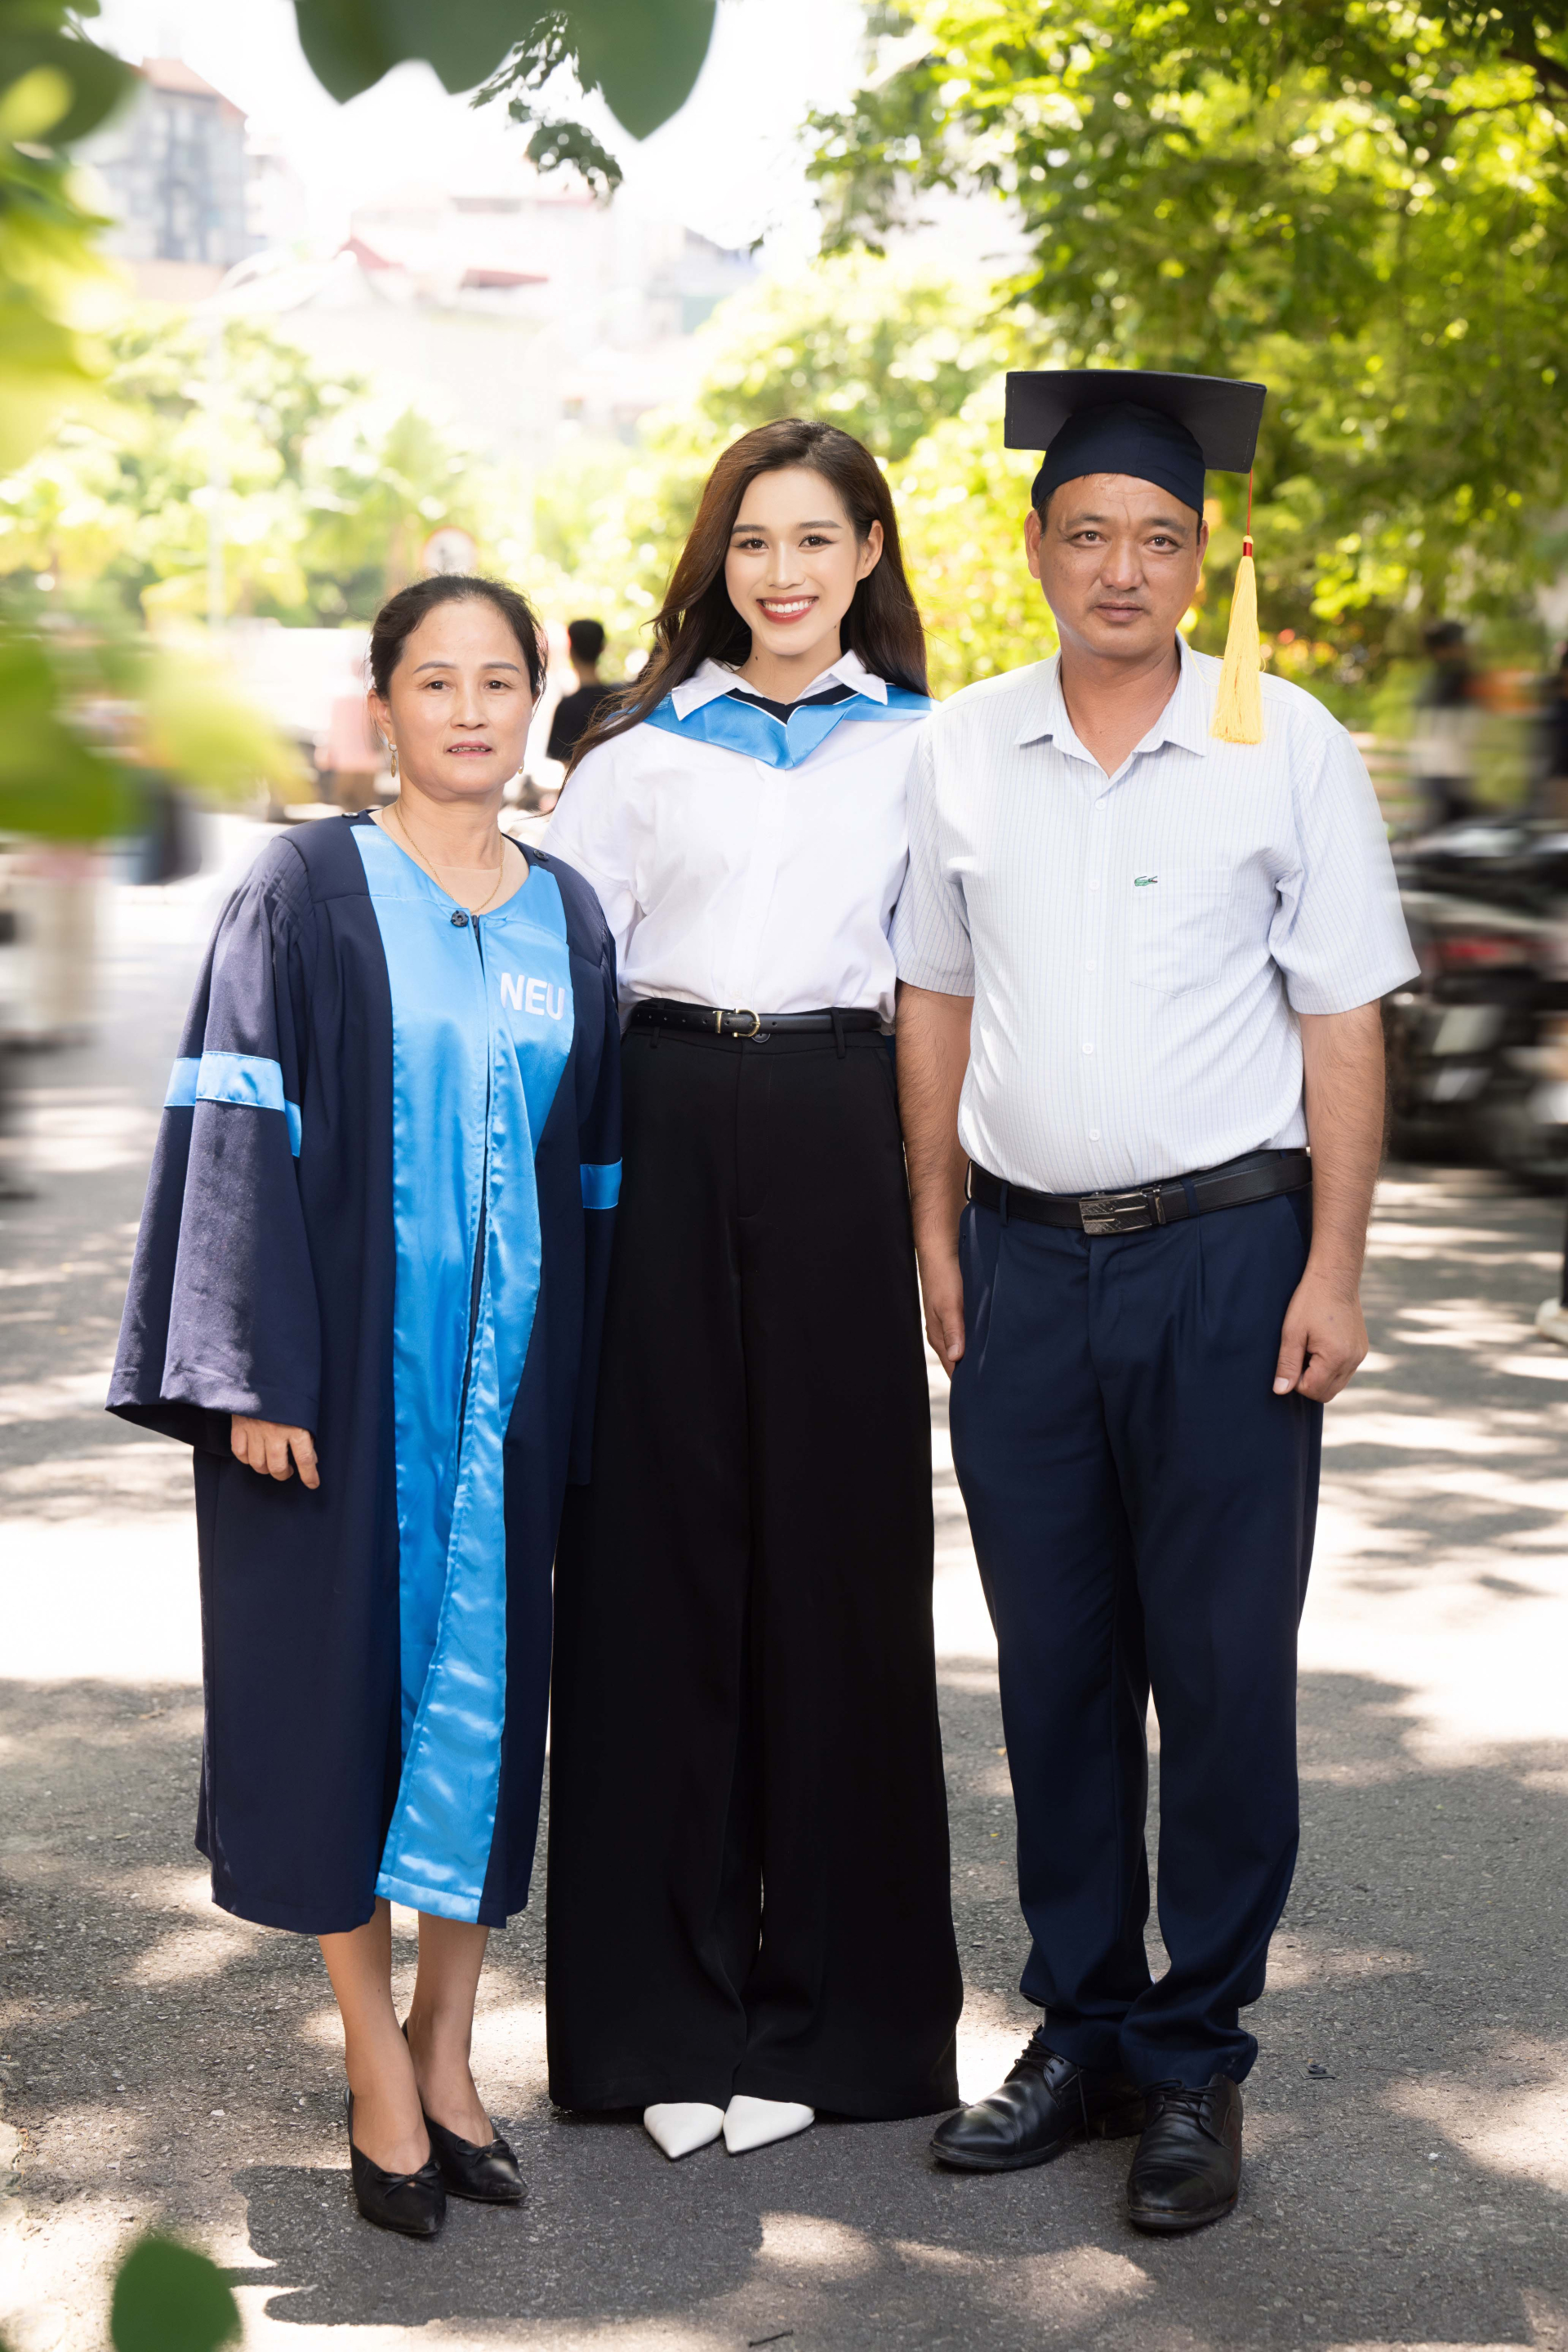 Hoa hậu Đỗ Hà cuốn hút trong ngày tốt nghiệp NEU, hào hứng chuẩn bị làm CEO ngành làm đẹp - ảnh 2